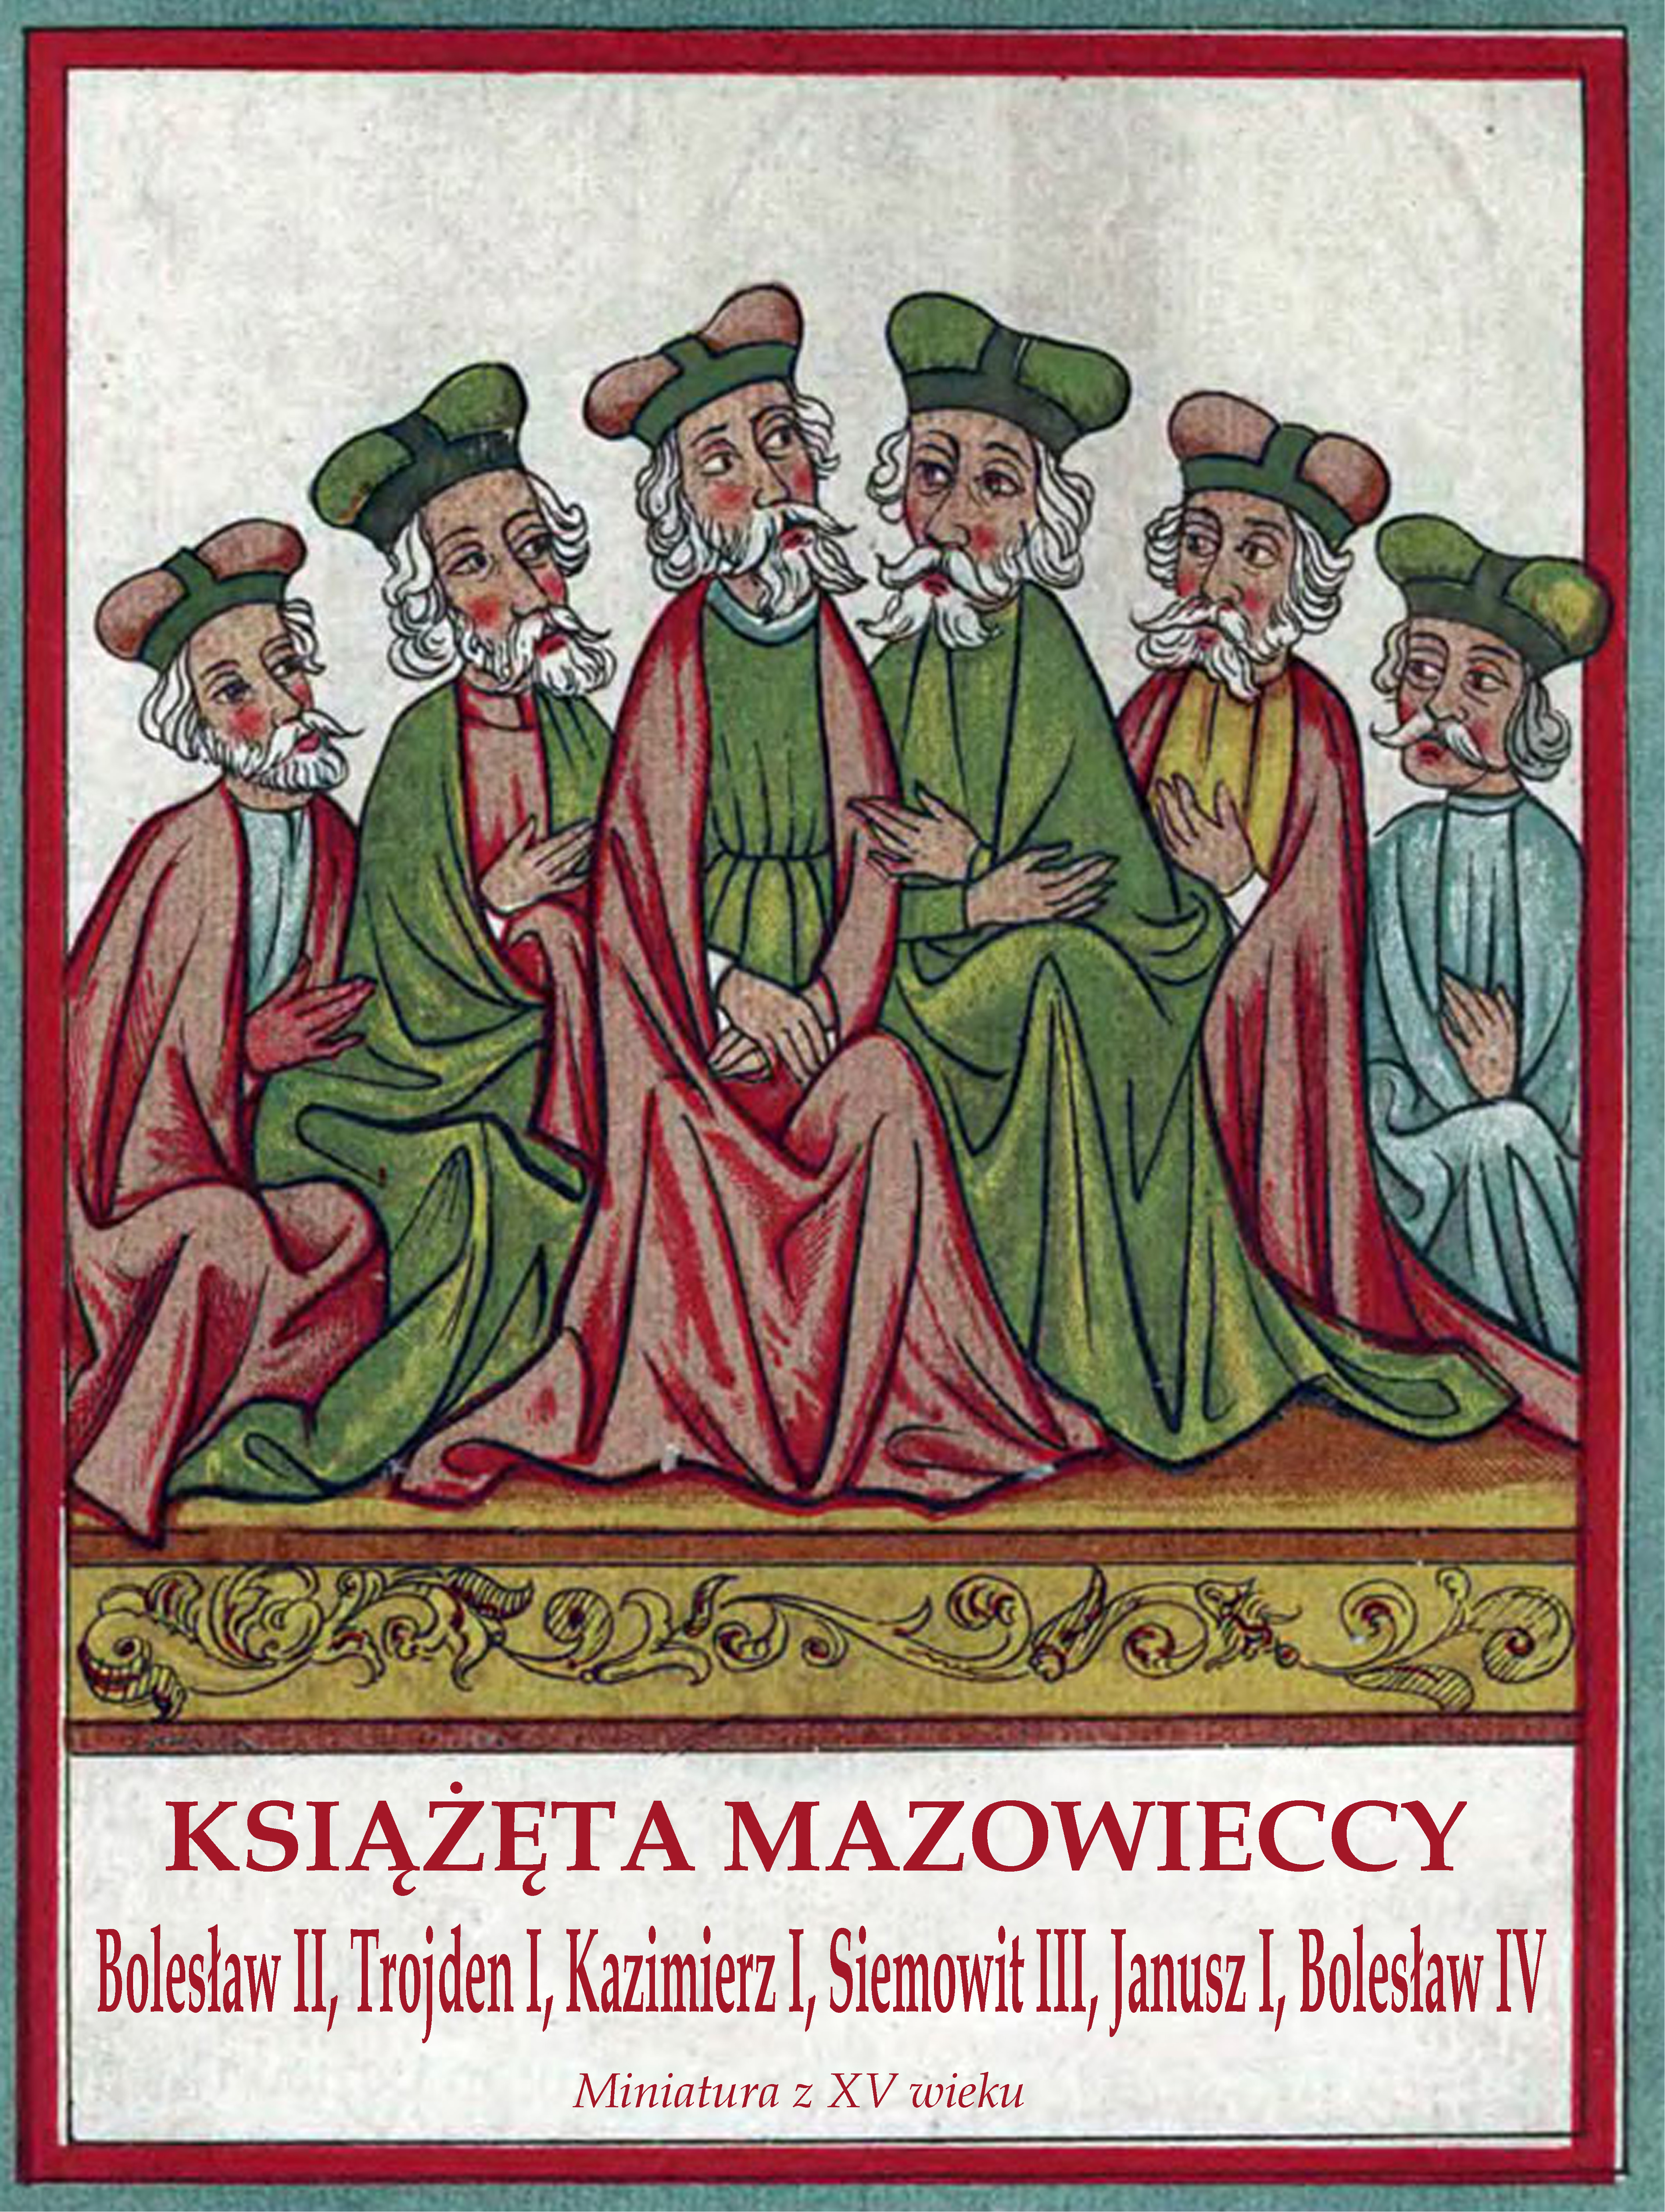 Książęta mazowieccy według miniatury z XV wieku. Siemowit III czwarty od lewej.